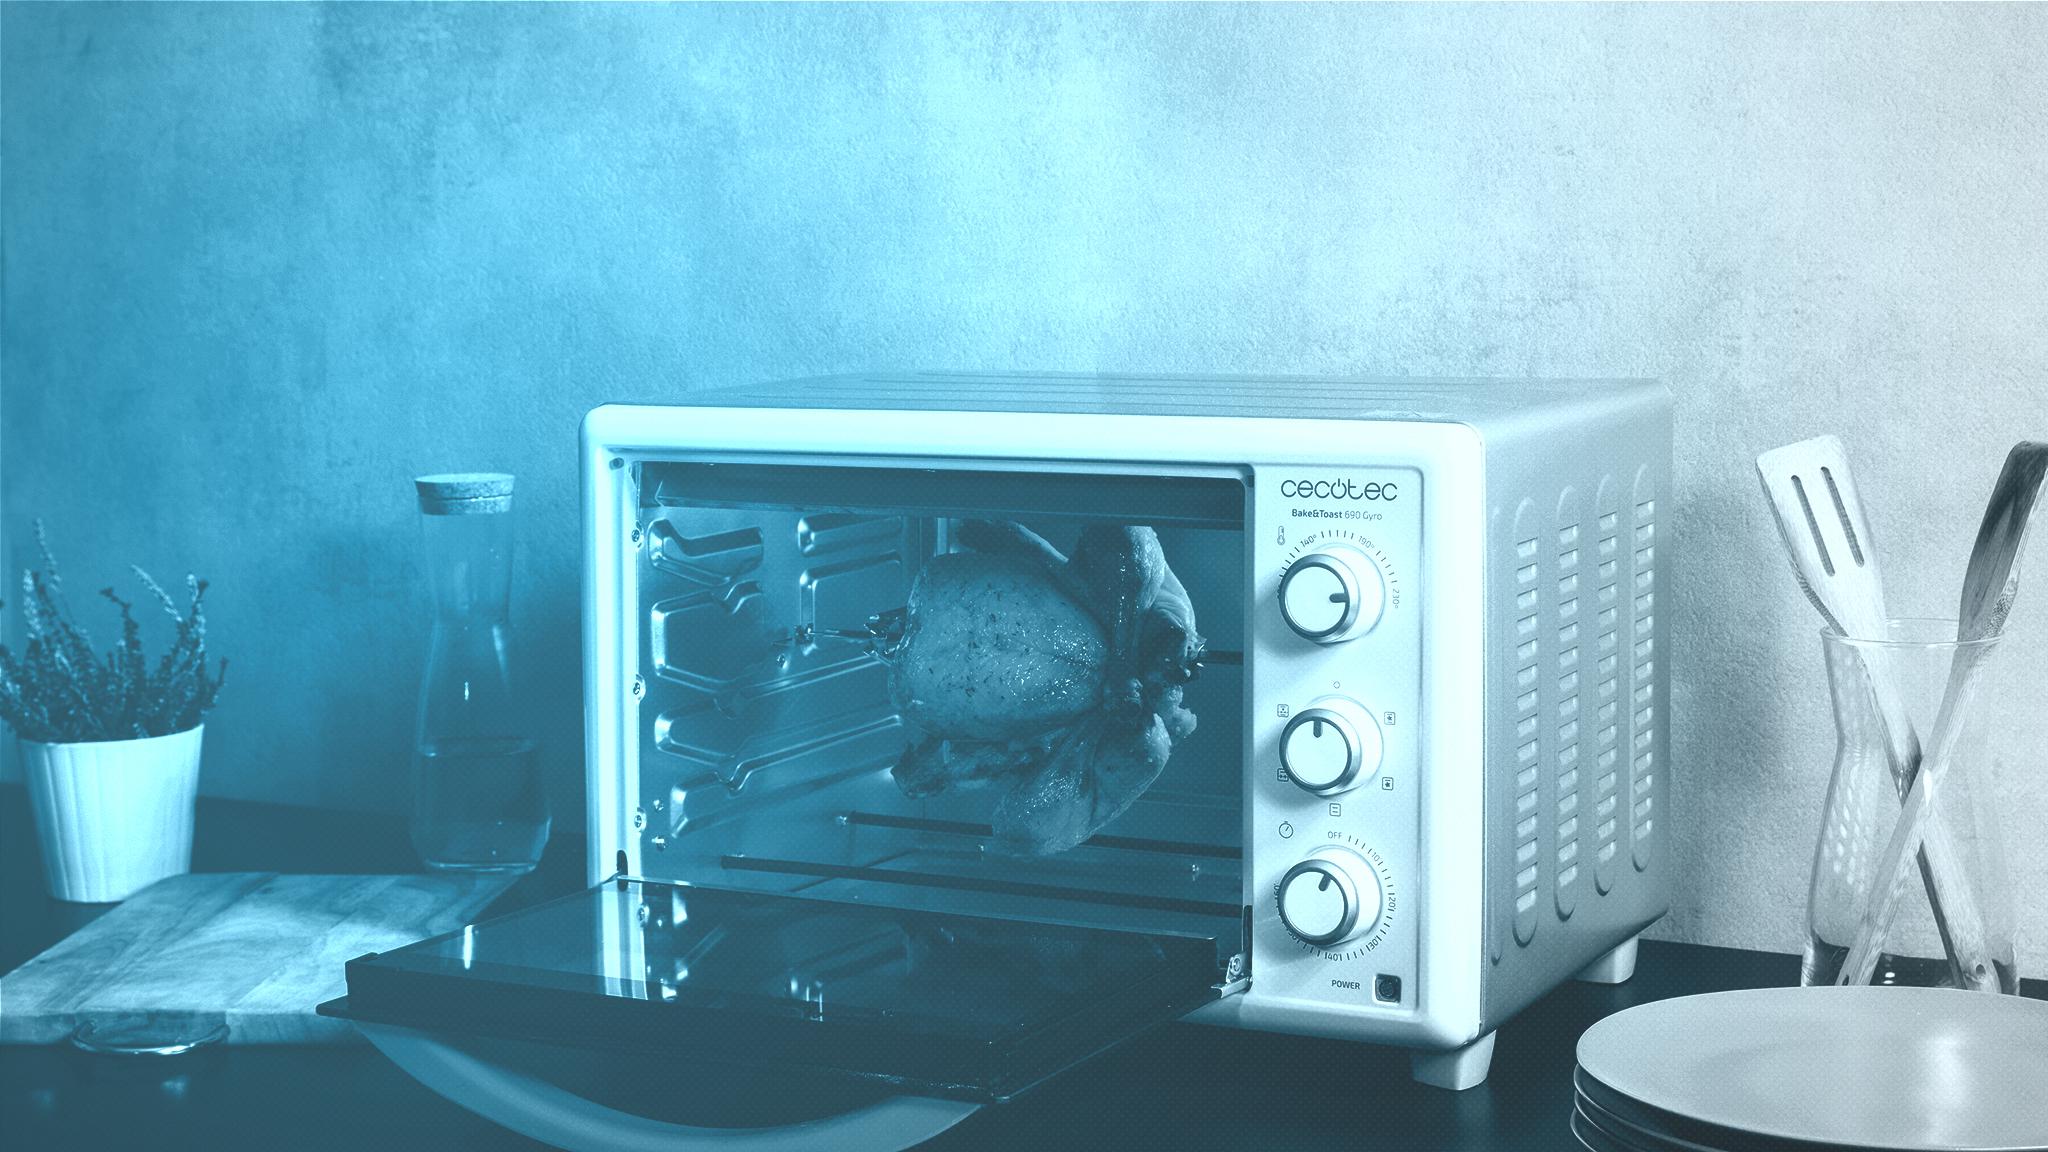 Cecotec - ¿Conoces el horno Bake&Taste 650 Gyro? El horno de sobremesa que  querrás en tu cocina 🤗: 🔸 30L de capacidad. 🔸 5 maneras de cocinar. 🔸  Doble cristal para mantener